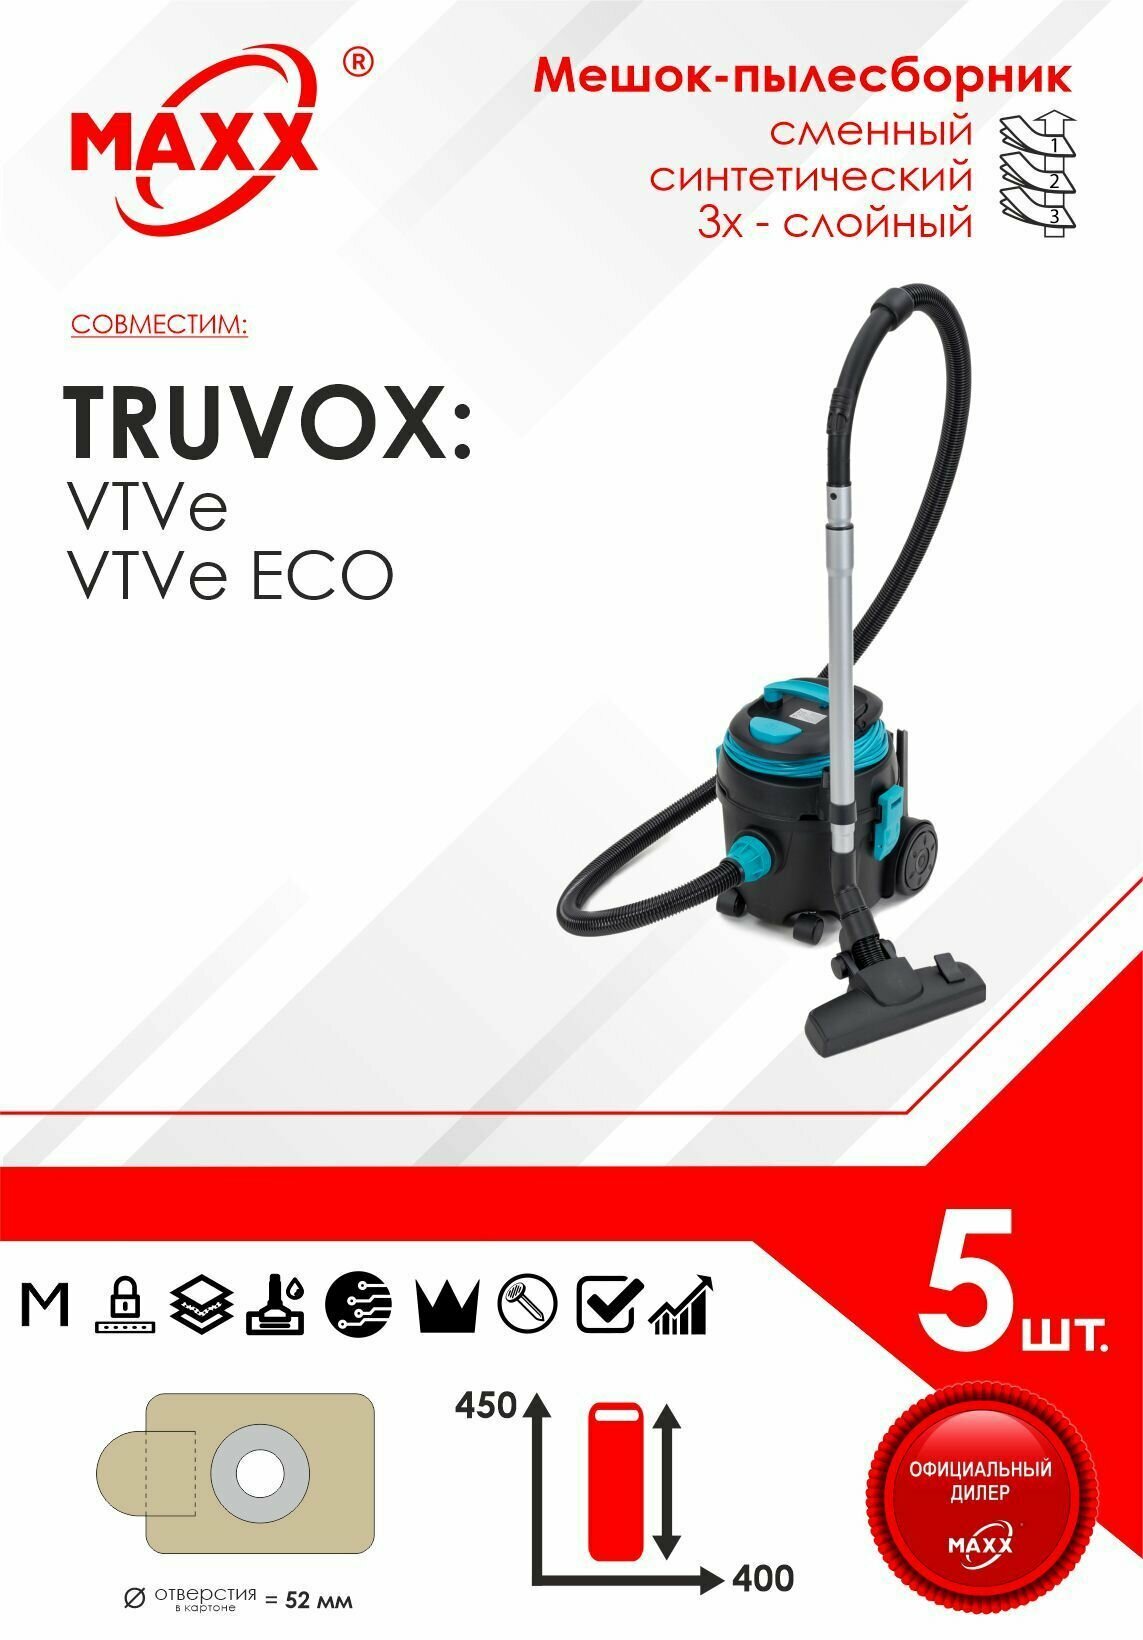 Мешок - пылесборник 5 шт. для пылесоса Truvox VTVe, Truvox VTVe ECO